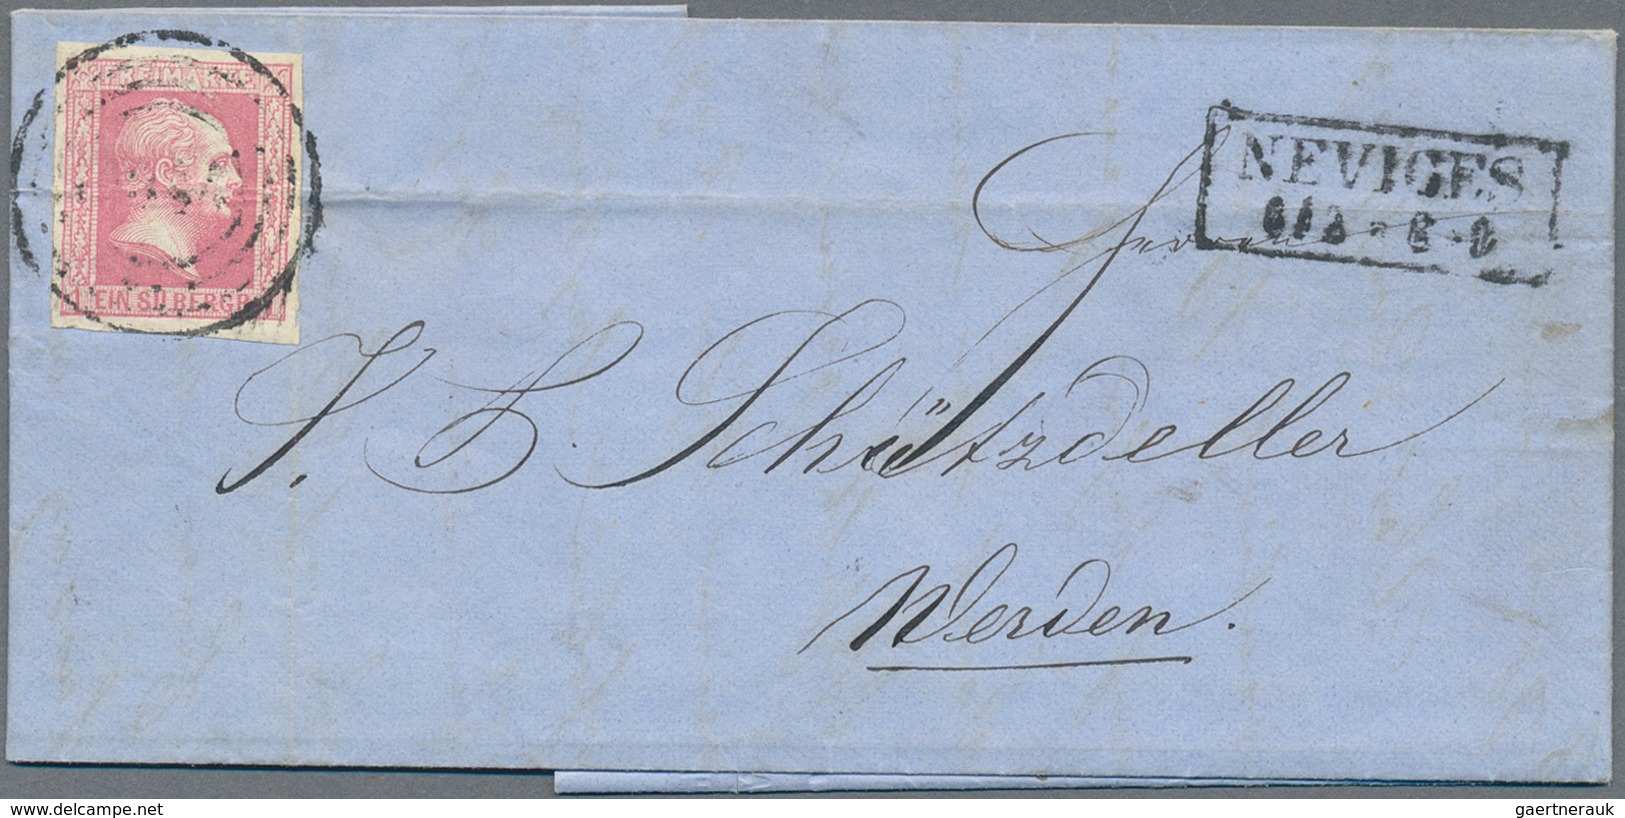 Preußen - Marken und Briefe: 1750/1867 (ca.), schöner Posten von ca. 130 Belegen, dabei gute Farb-,